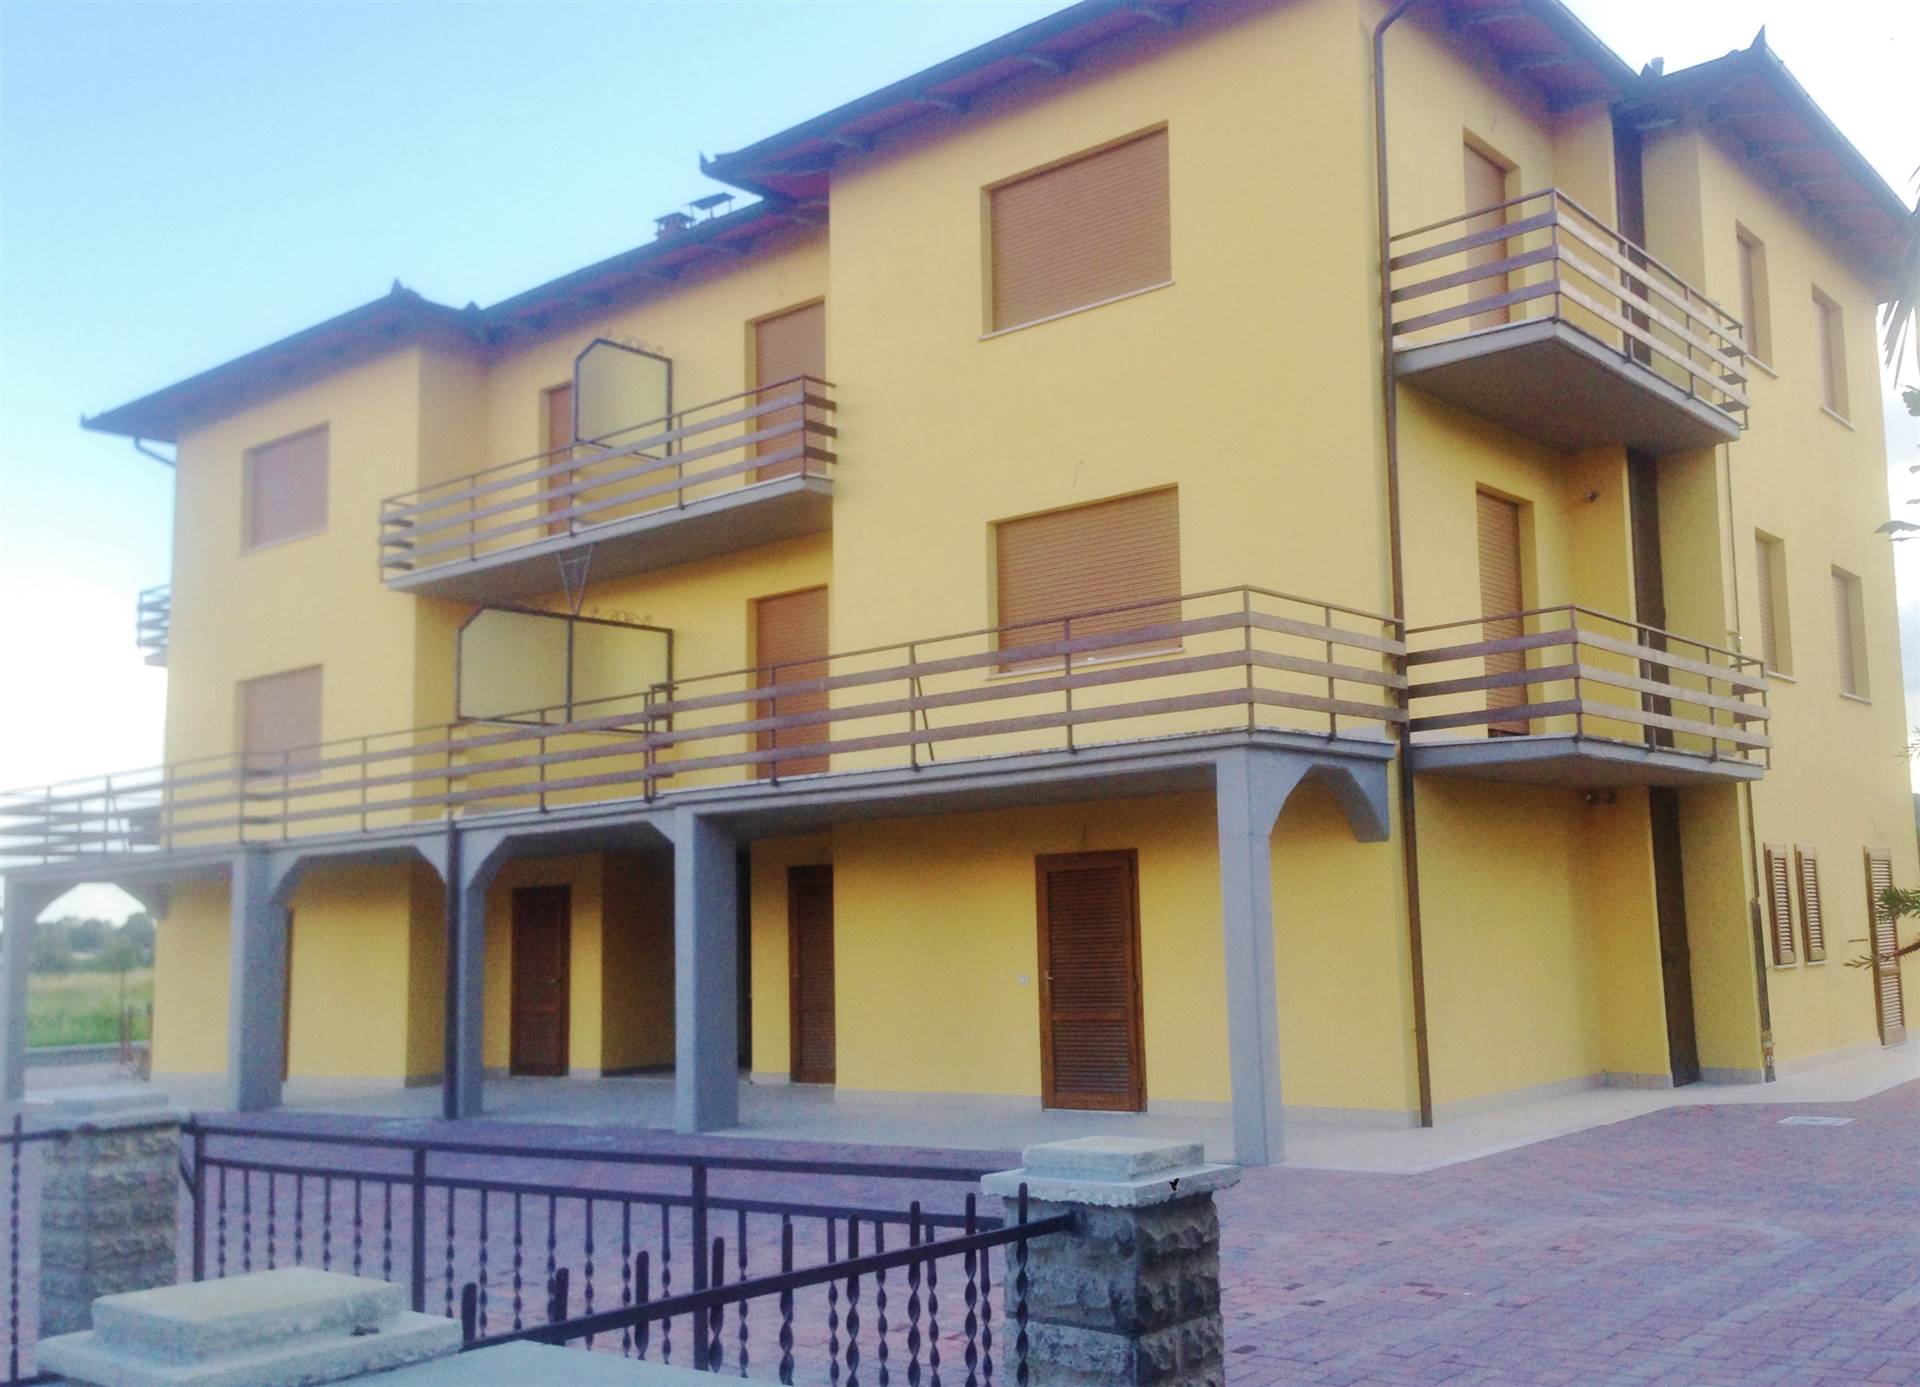 Appartamento in vendita a Tuoro sul Trasimeno, 4 locali, prezzo € 75.000 | PortaleAgenzieImmobiliari.it